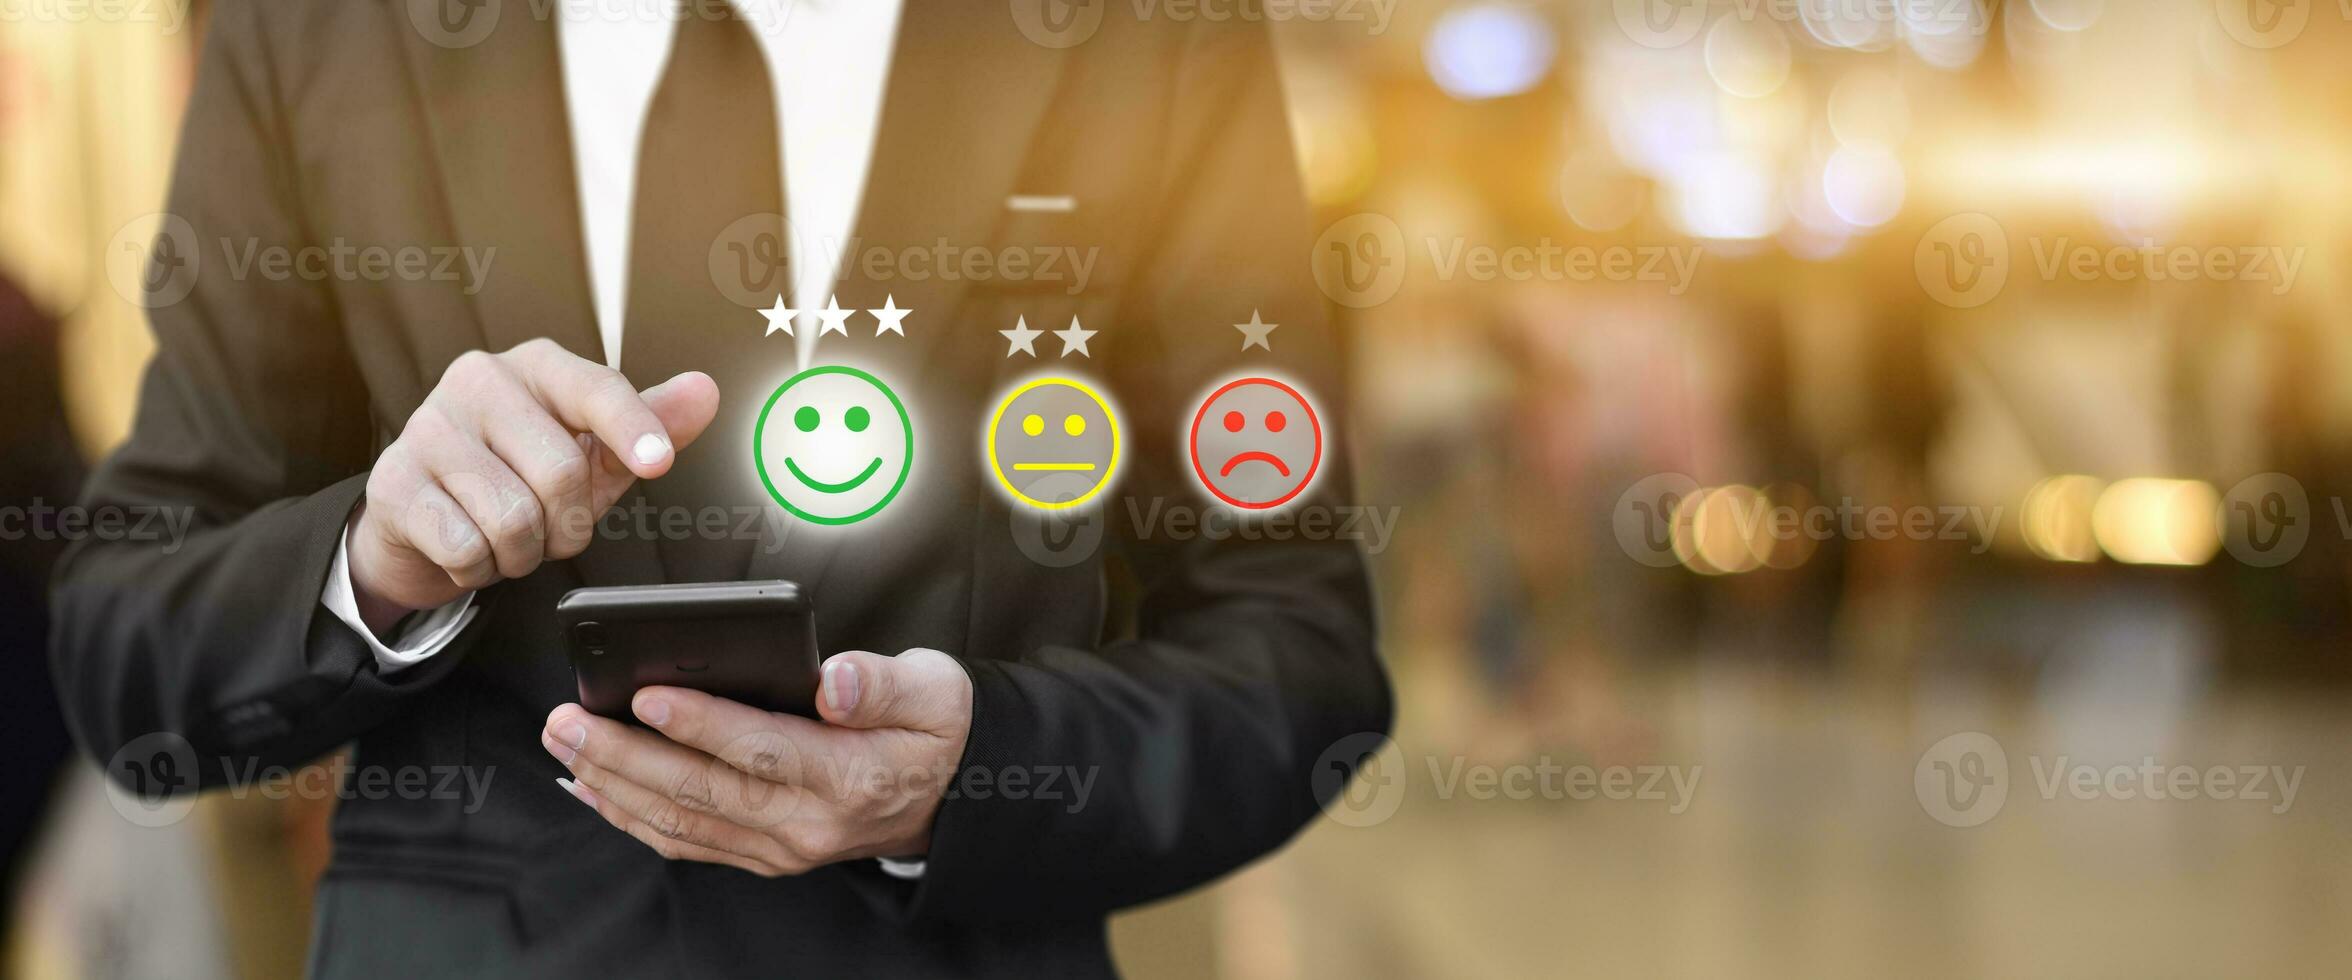 Geschäftsmann drückt Gesicht Emoticon im Smartphone auf der Anzeige auf dem virtuellen Bildschirm. konzept der zufriedenheitsbewertung und des feedbacks des kundenservices. foto